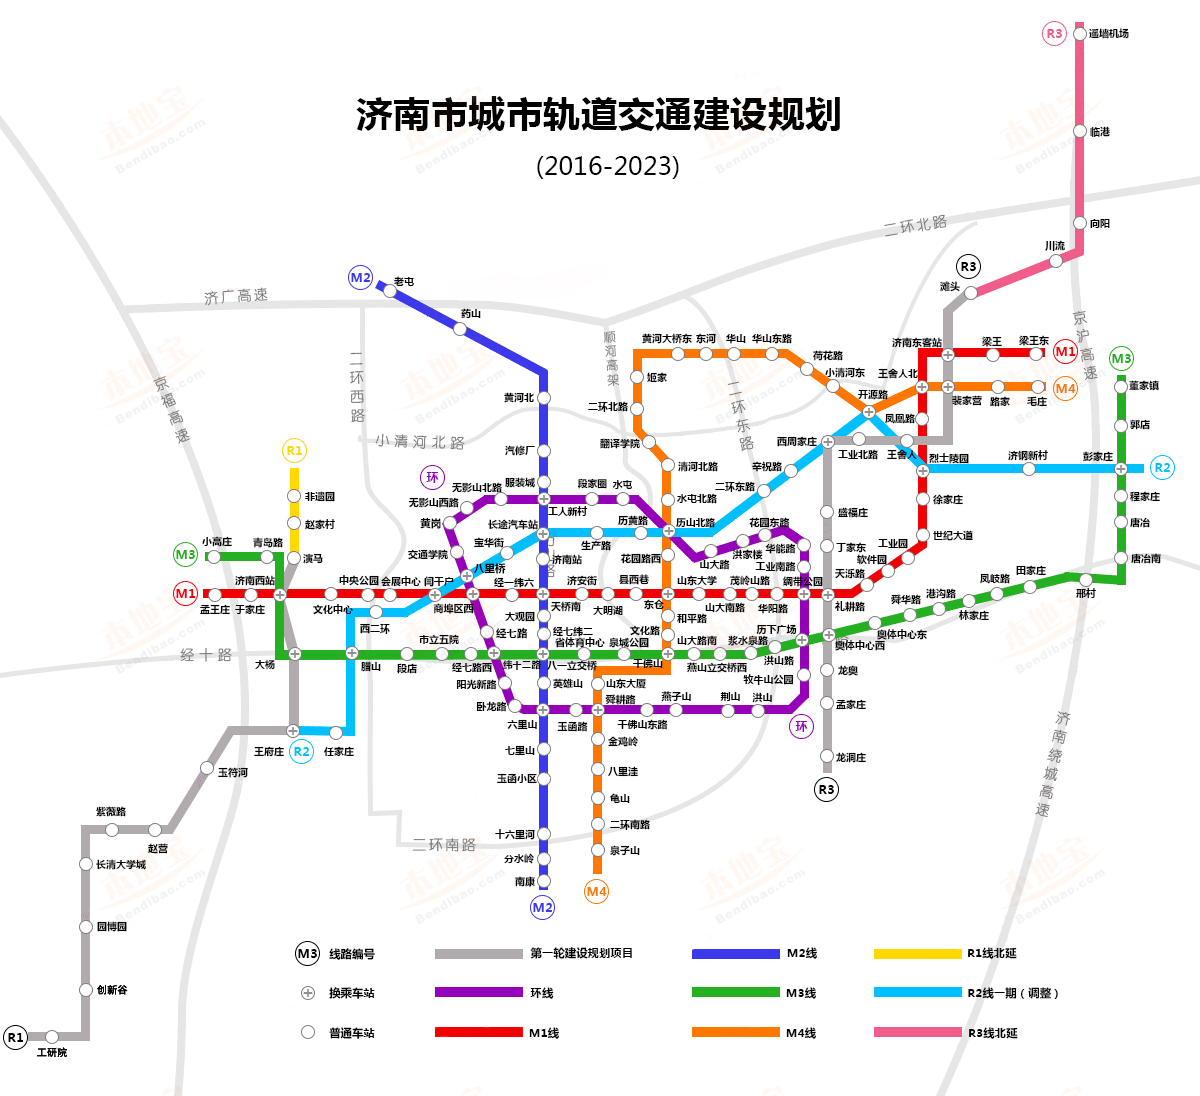 关注后在对话框回复【地铁】可获济南地铁线路图,站点详情,最新进展